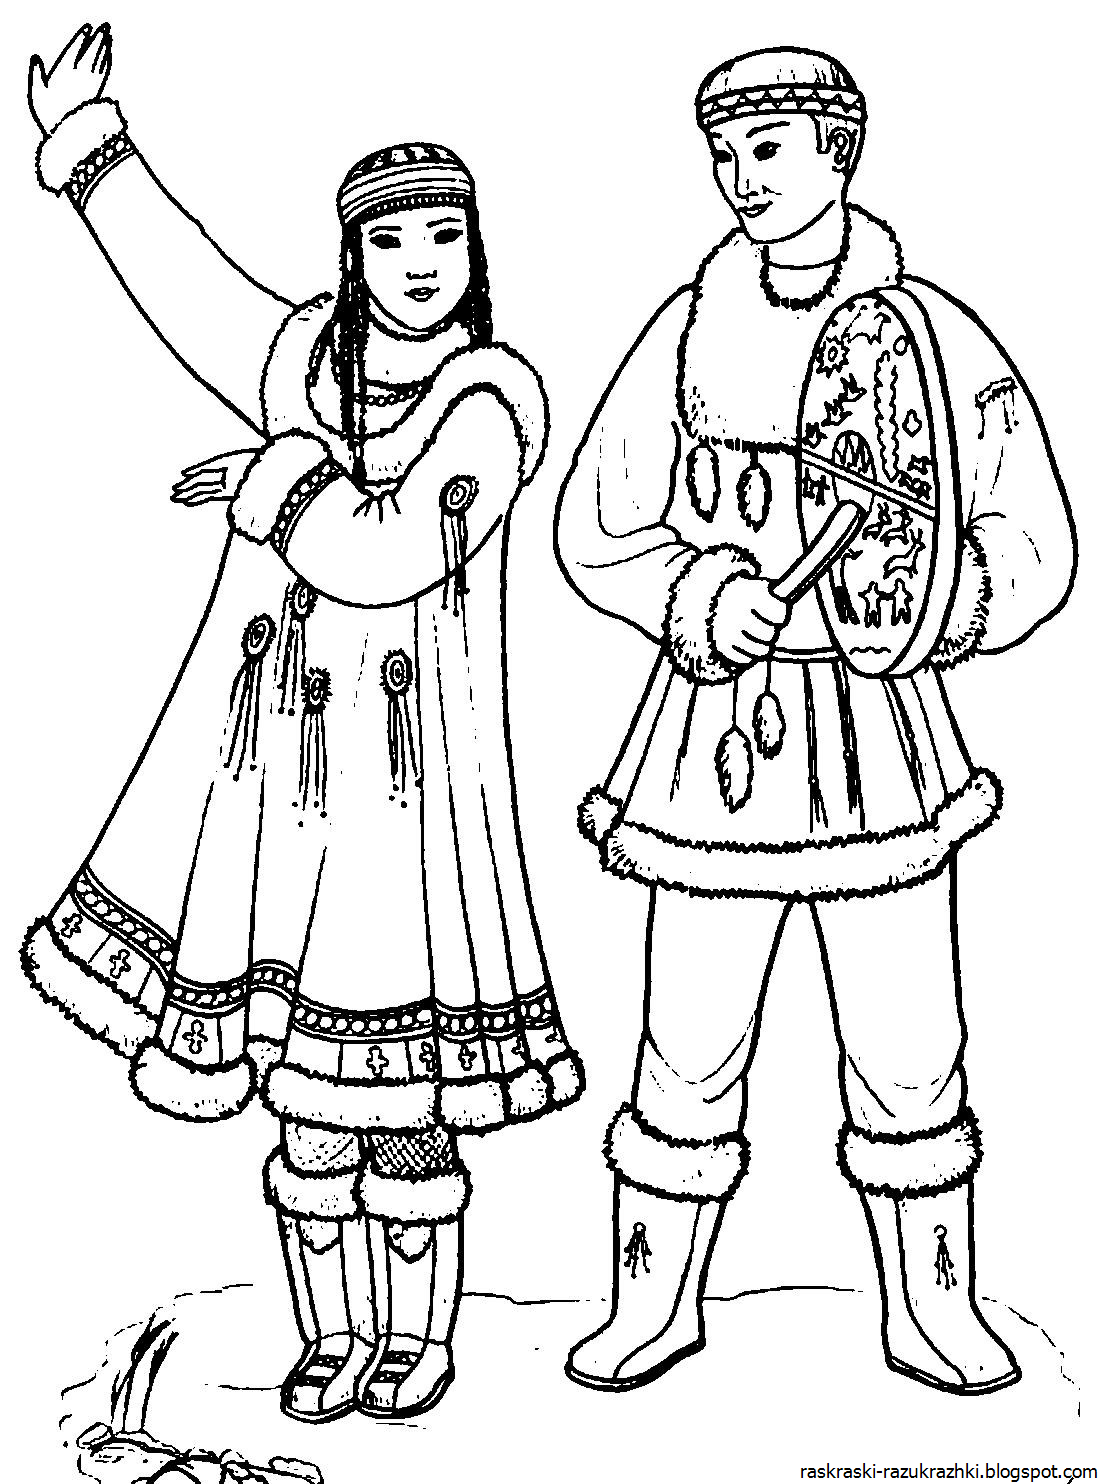 Рисунок на тему народы сибири фото